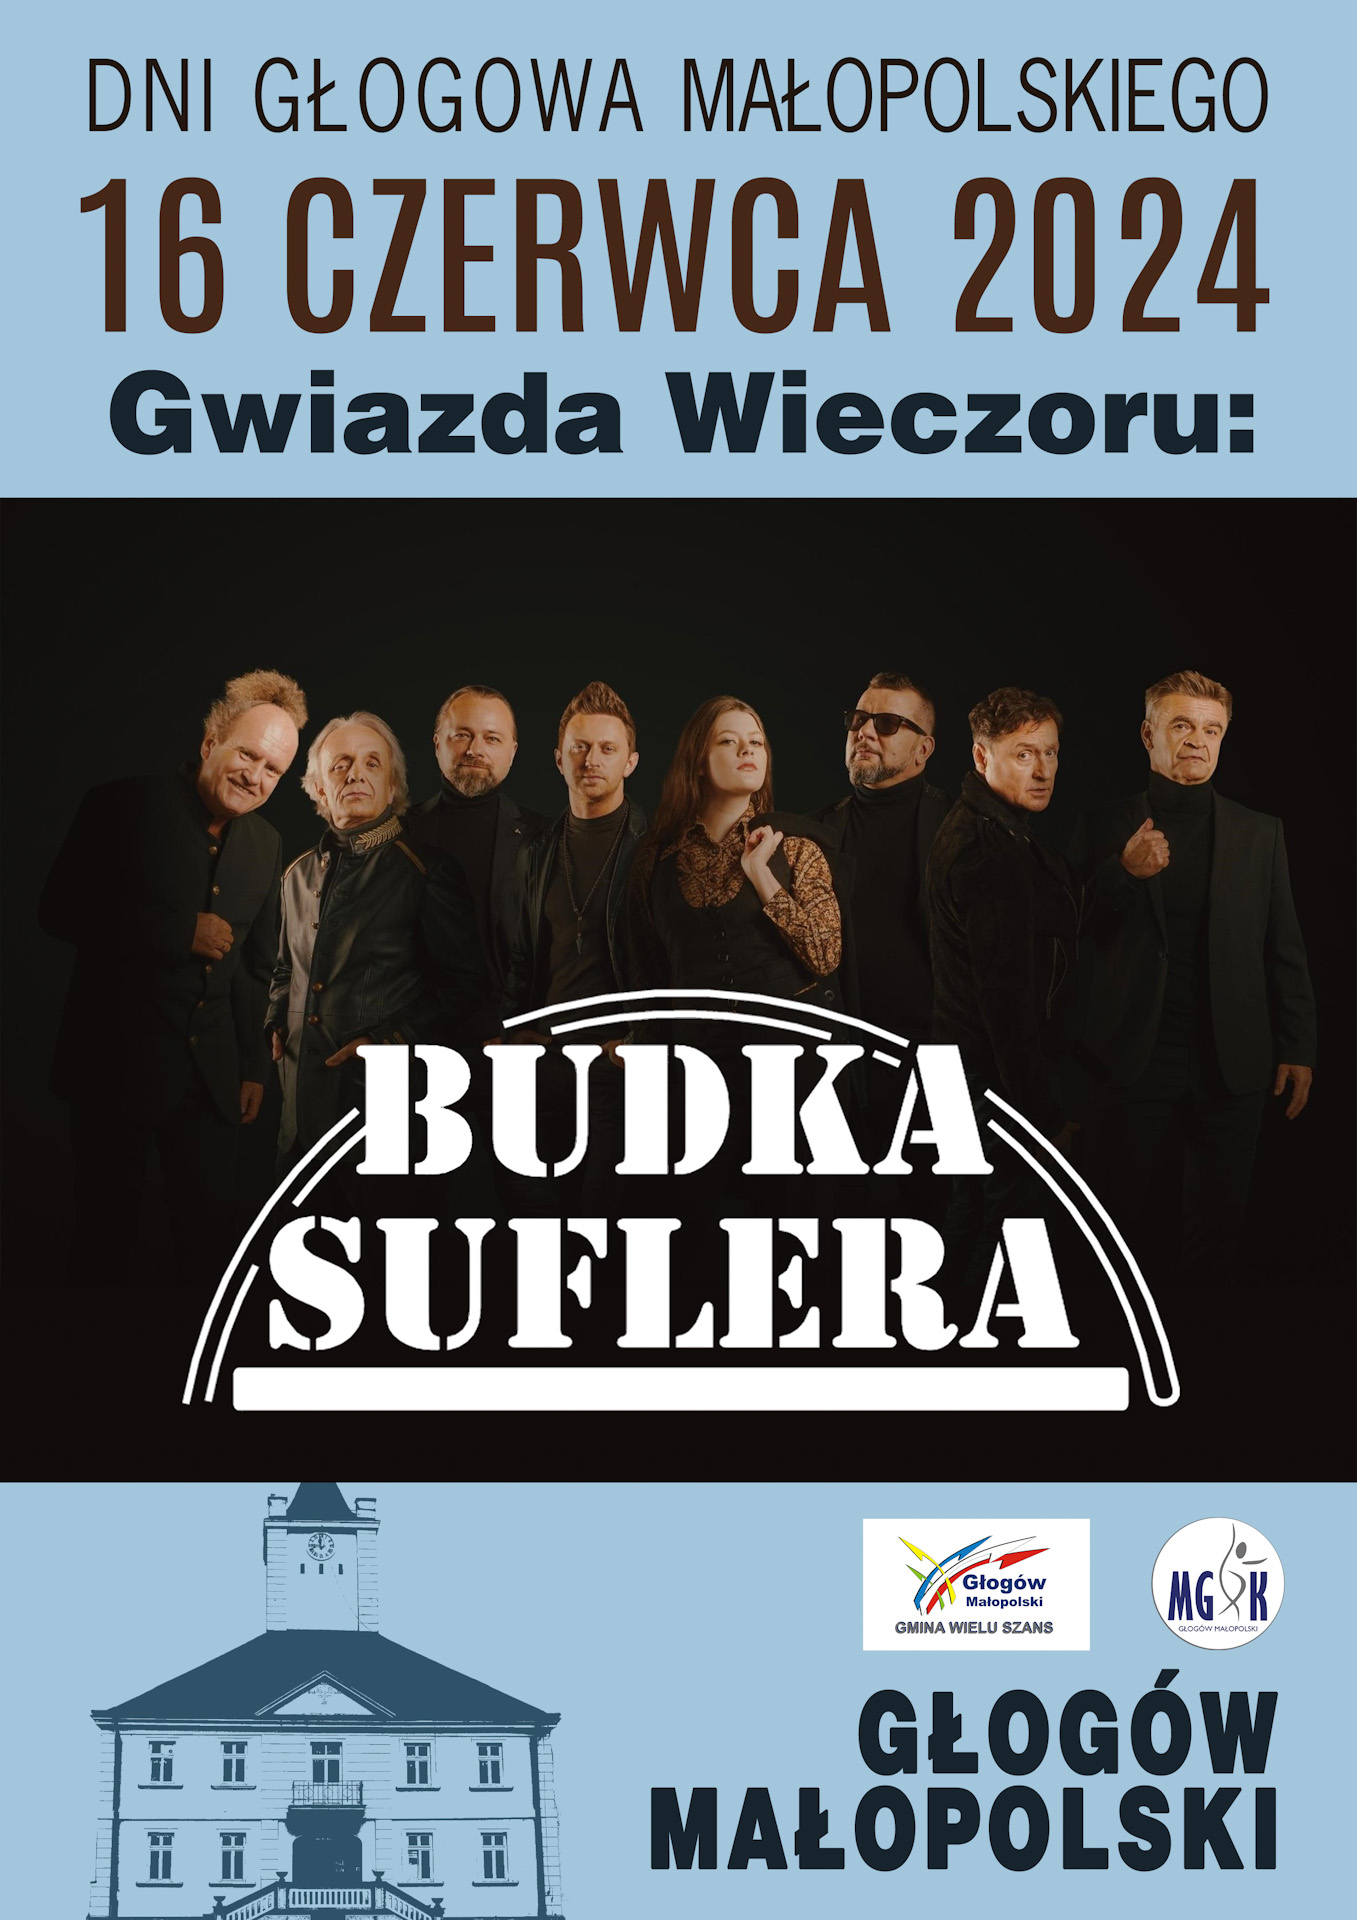 Zapraszamy na Dni Głogowa Małopolskiego - zagra Budka Suflera!!!